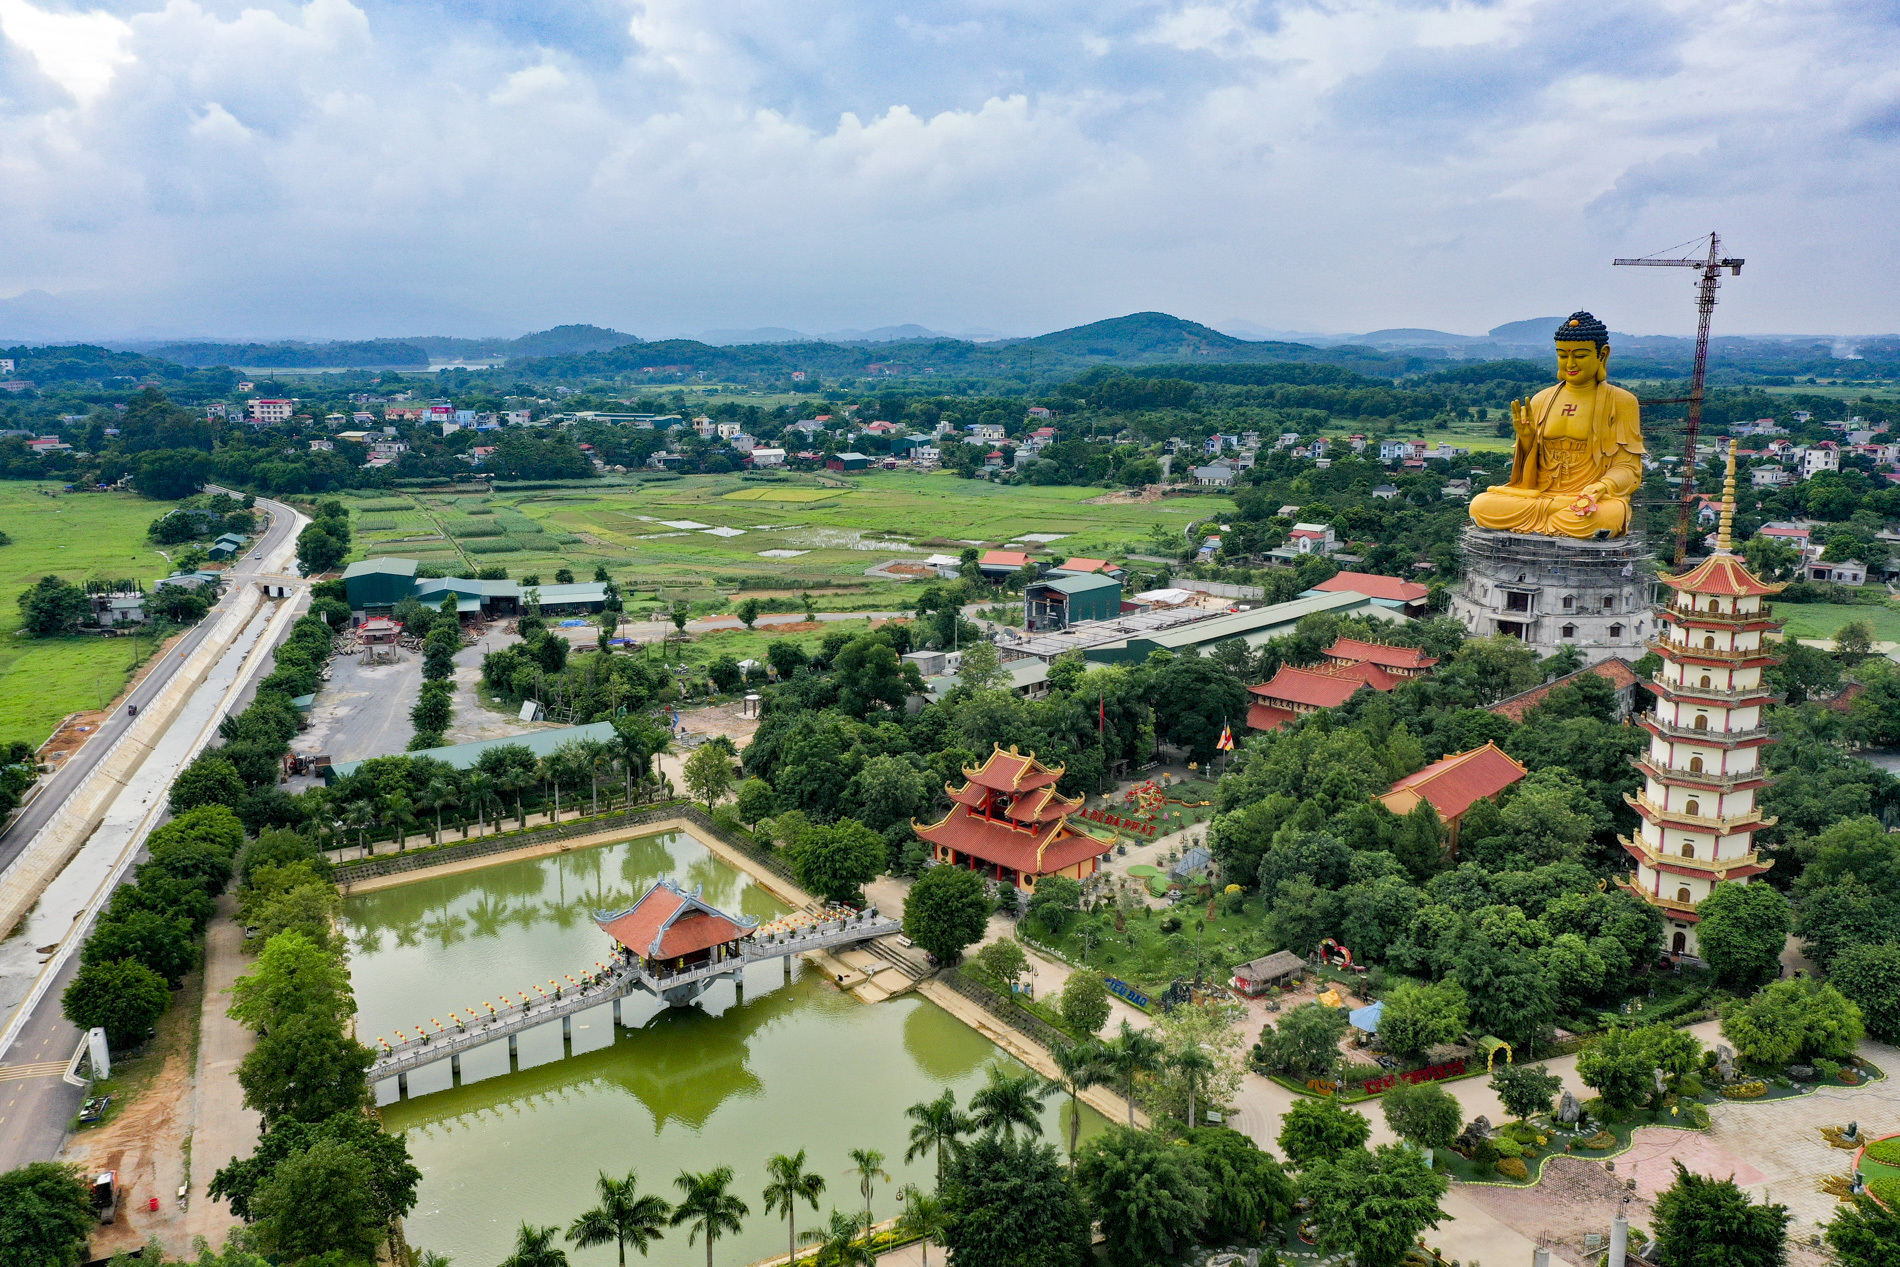 Chiêm ngưỡng tượng Phật lớn nhất khu vực Đông Nam Á